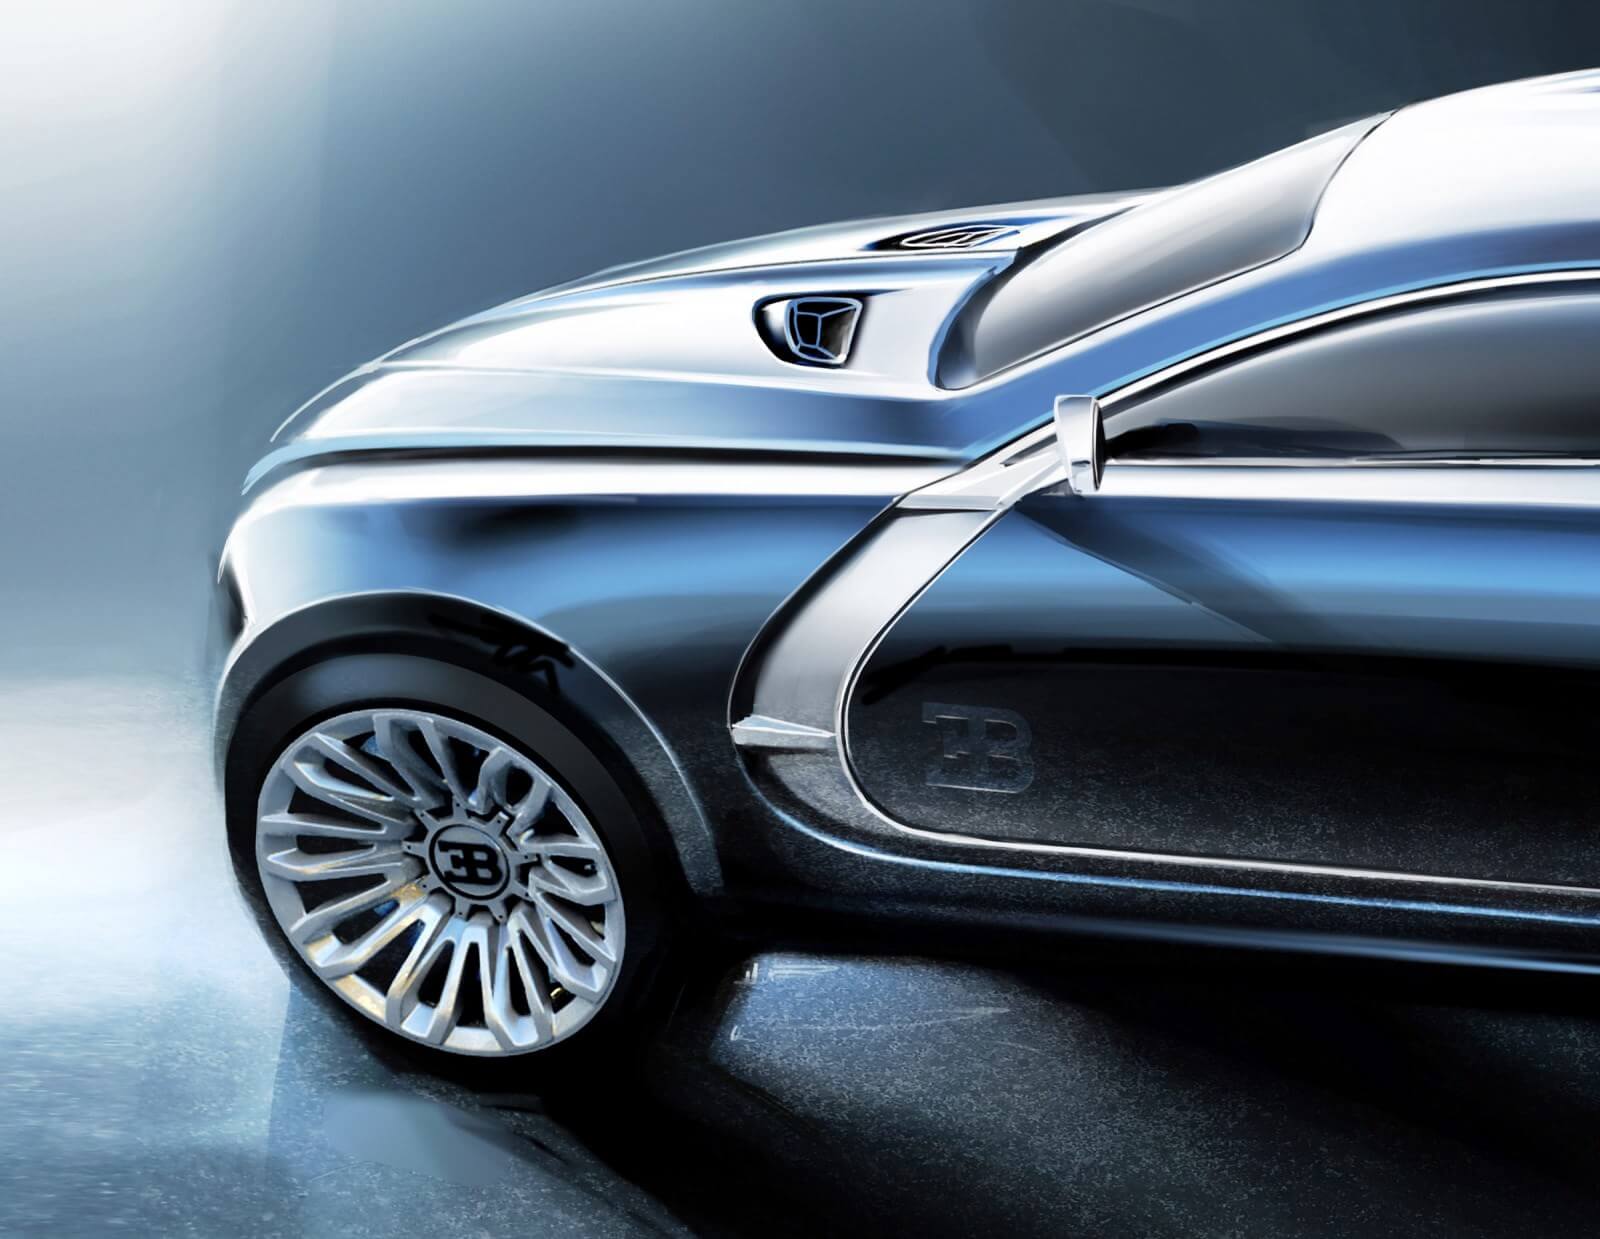 Bugatti SUV Design Concept by Ondrej Jirec